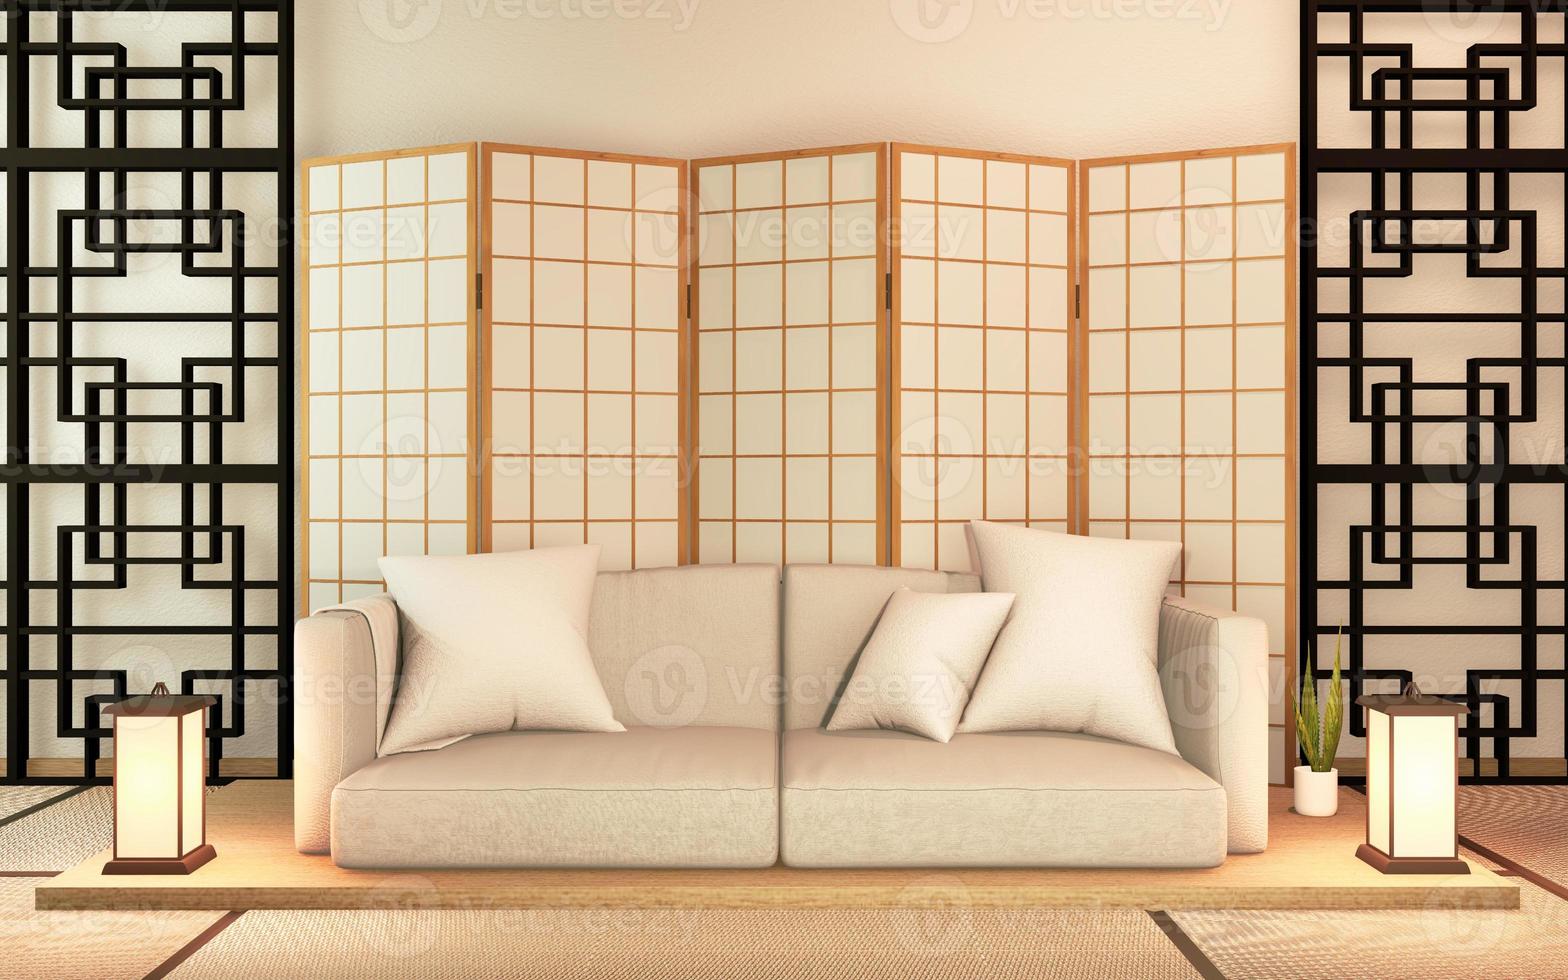 Sofa wooden japan design, on room  japan wooden floor .3D rendering photo